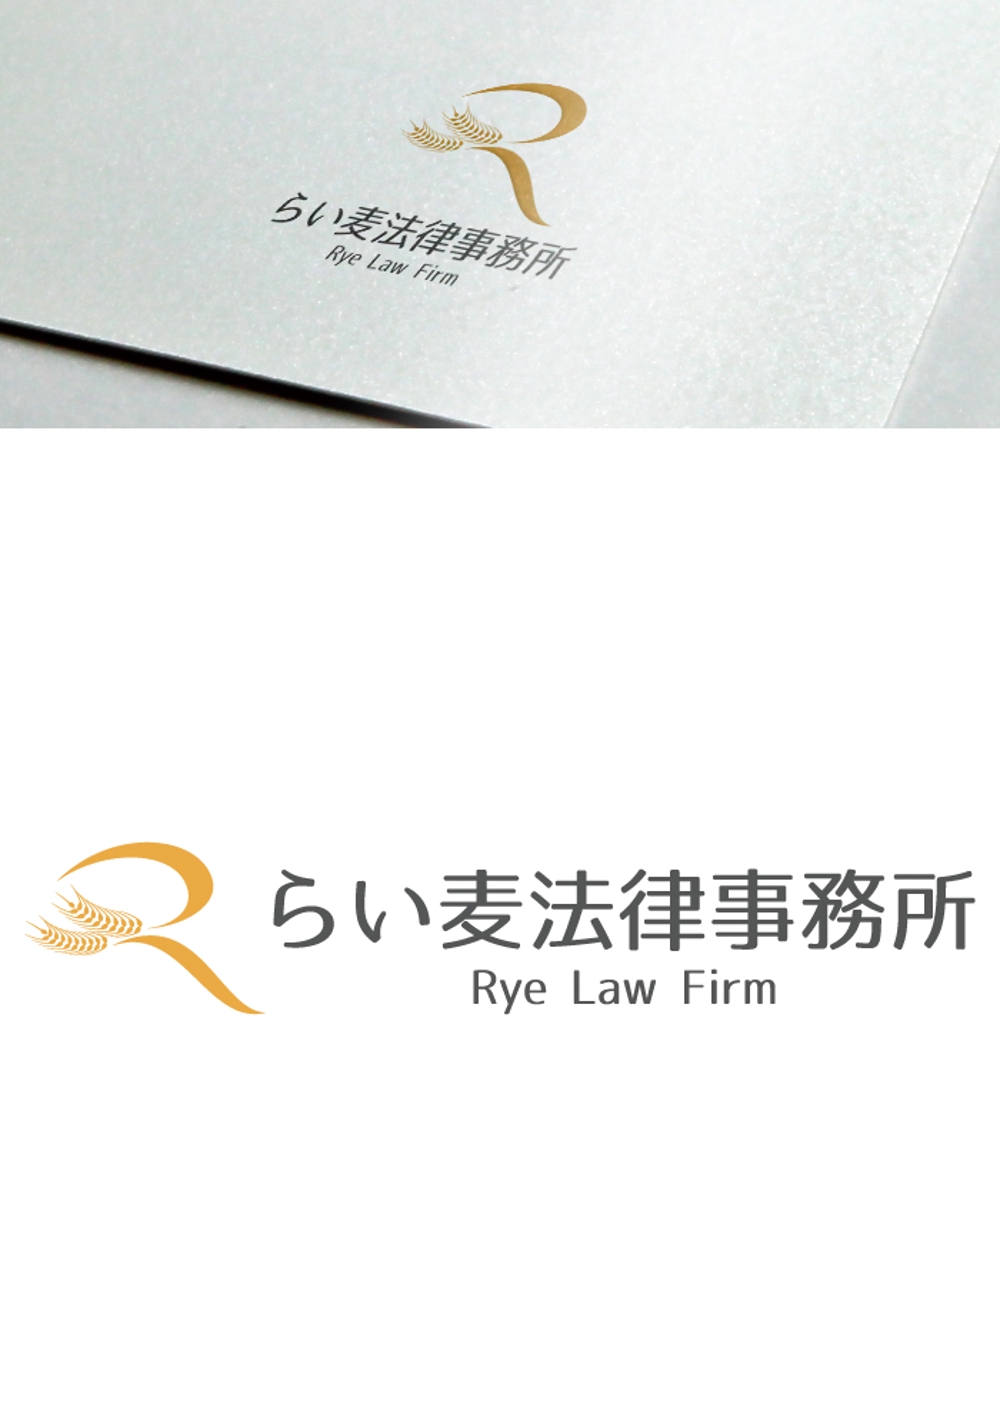 法律事務所「らい麦法律事務所」のロゴ